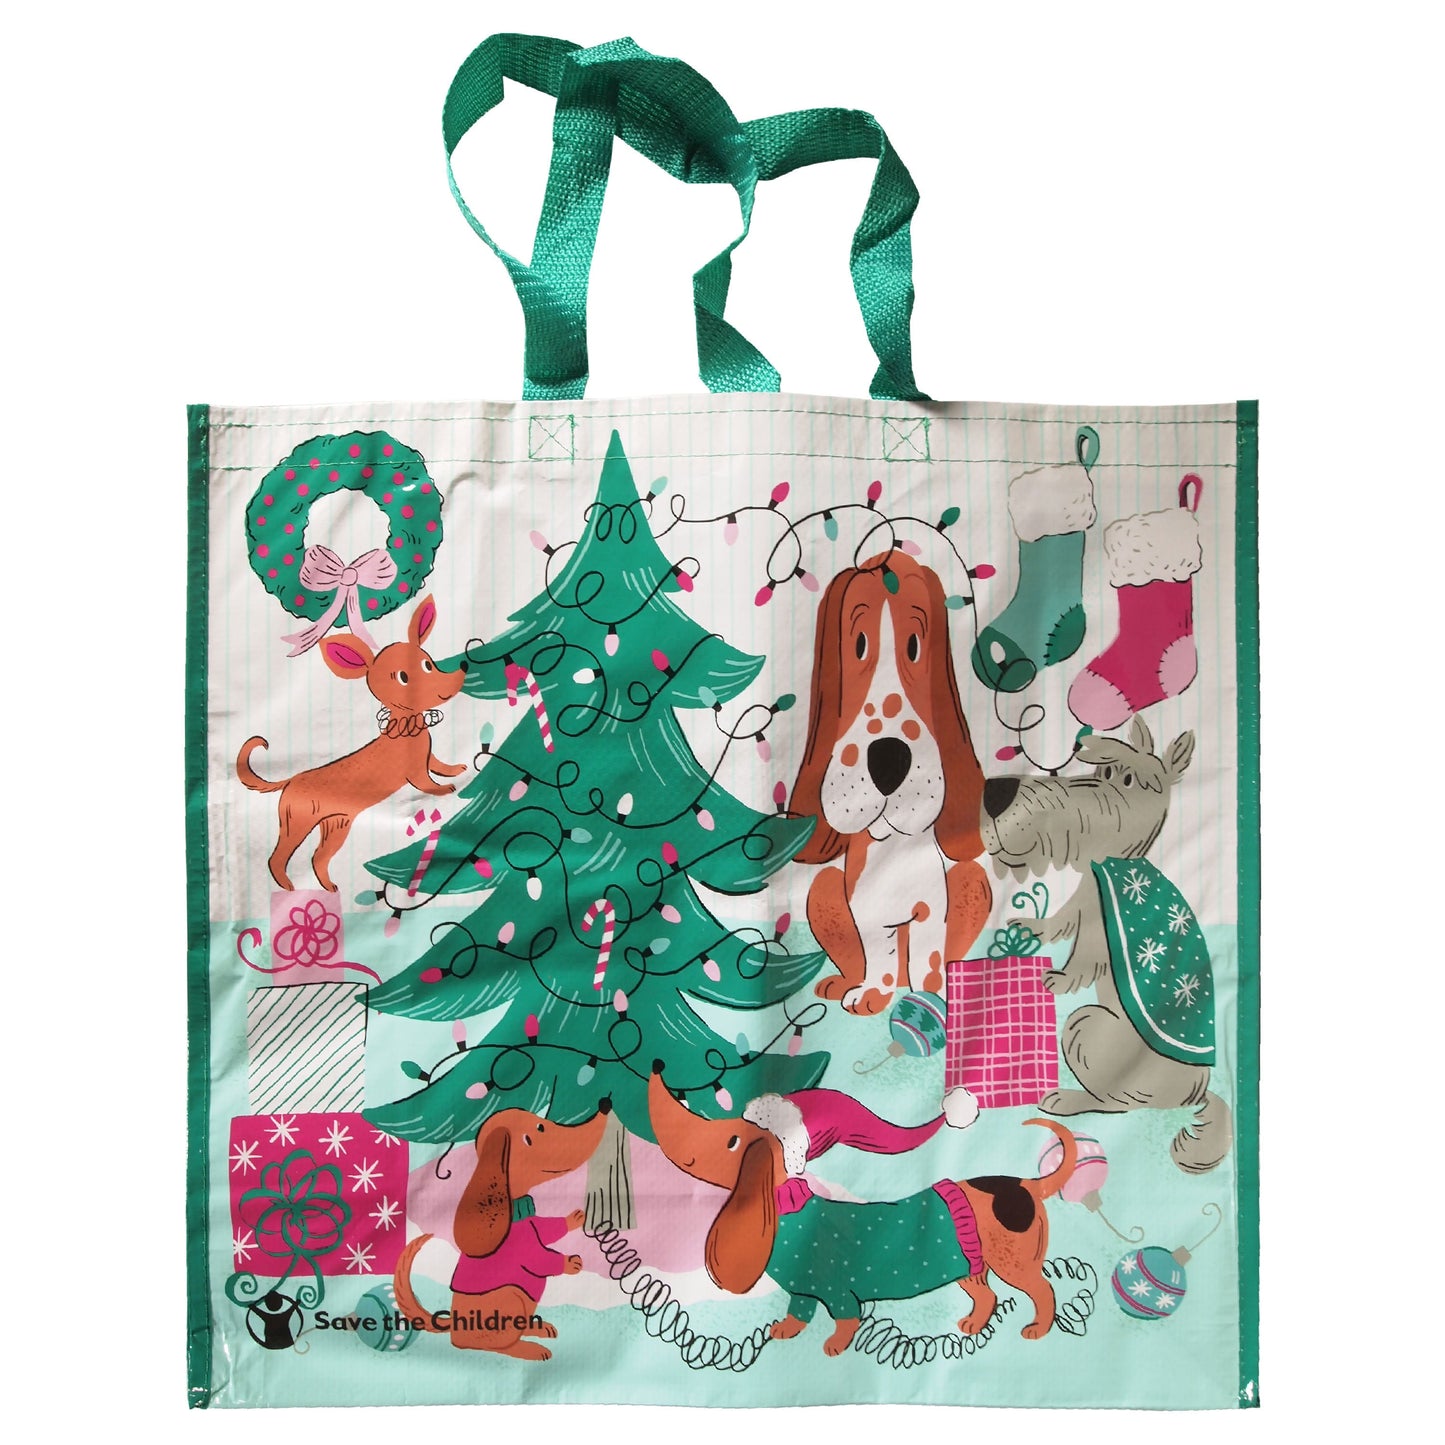 Reusable Eco Friendly Shopping/Gift Bag - Christmas themed 2 Bag Set!